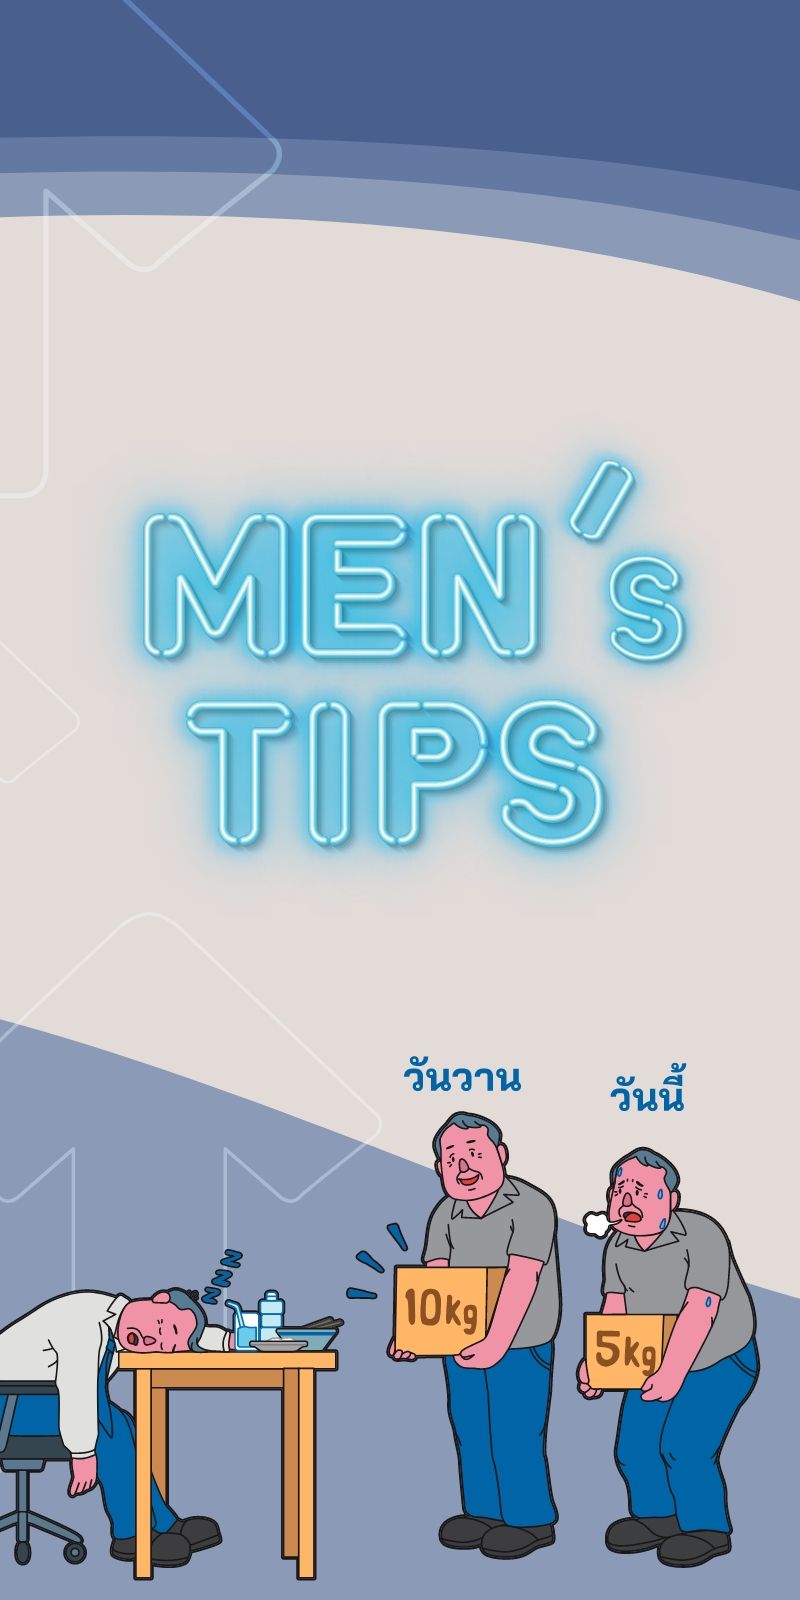 Men's Tips